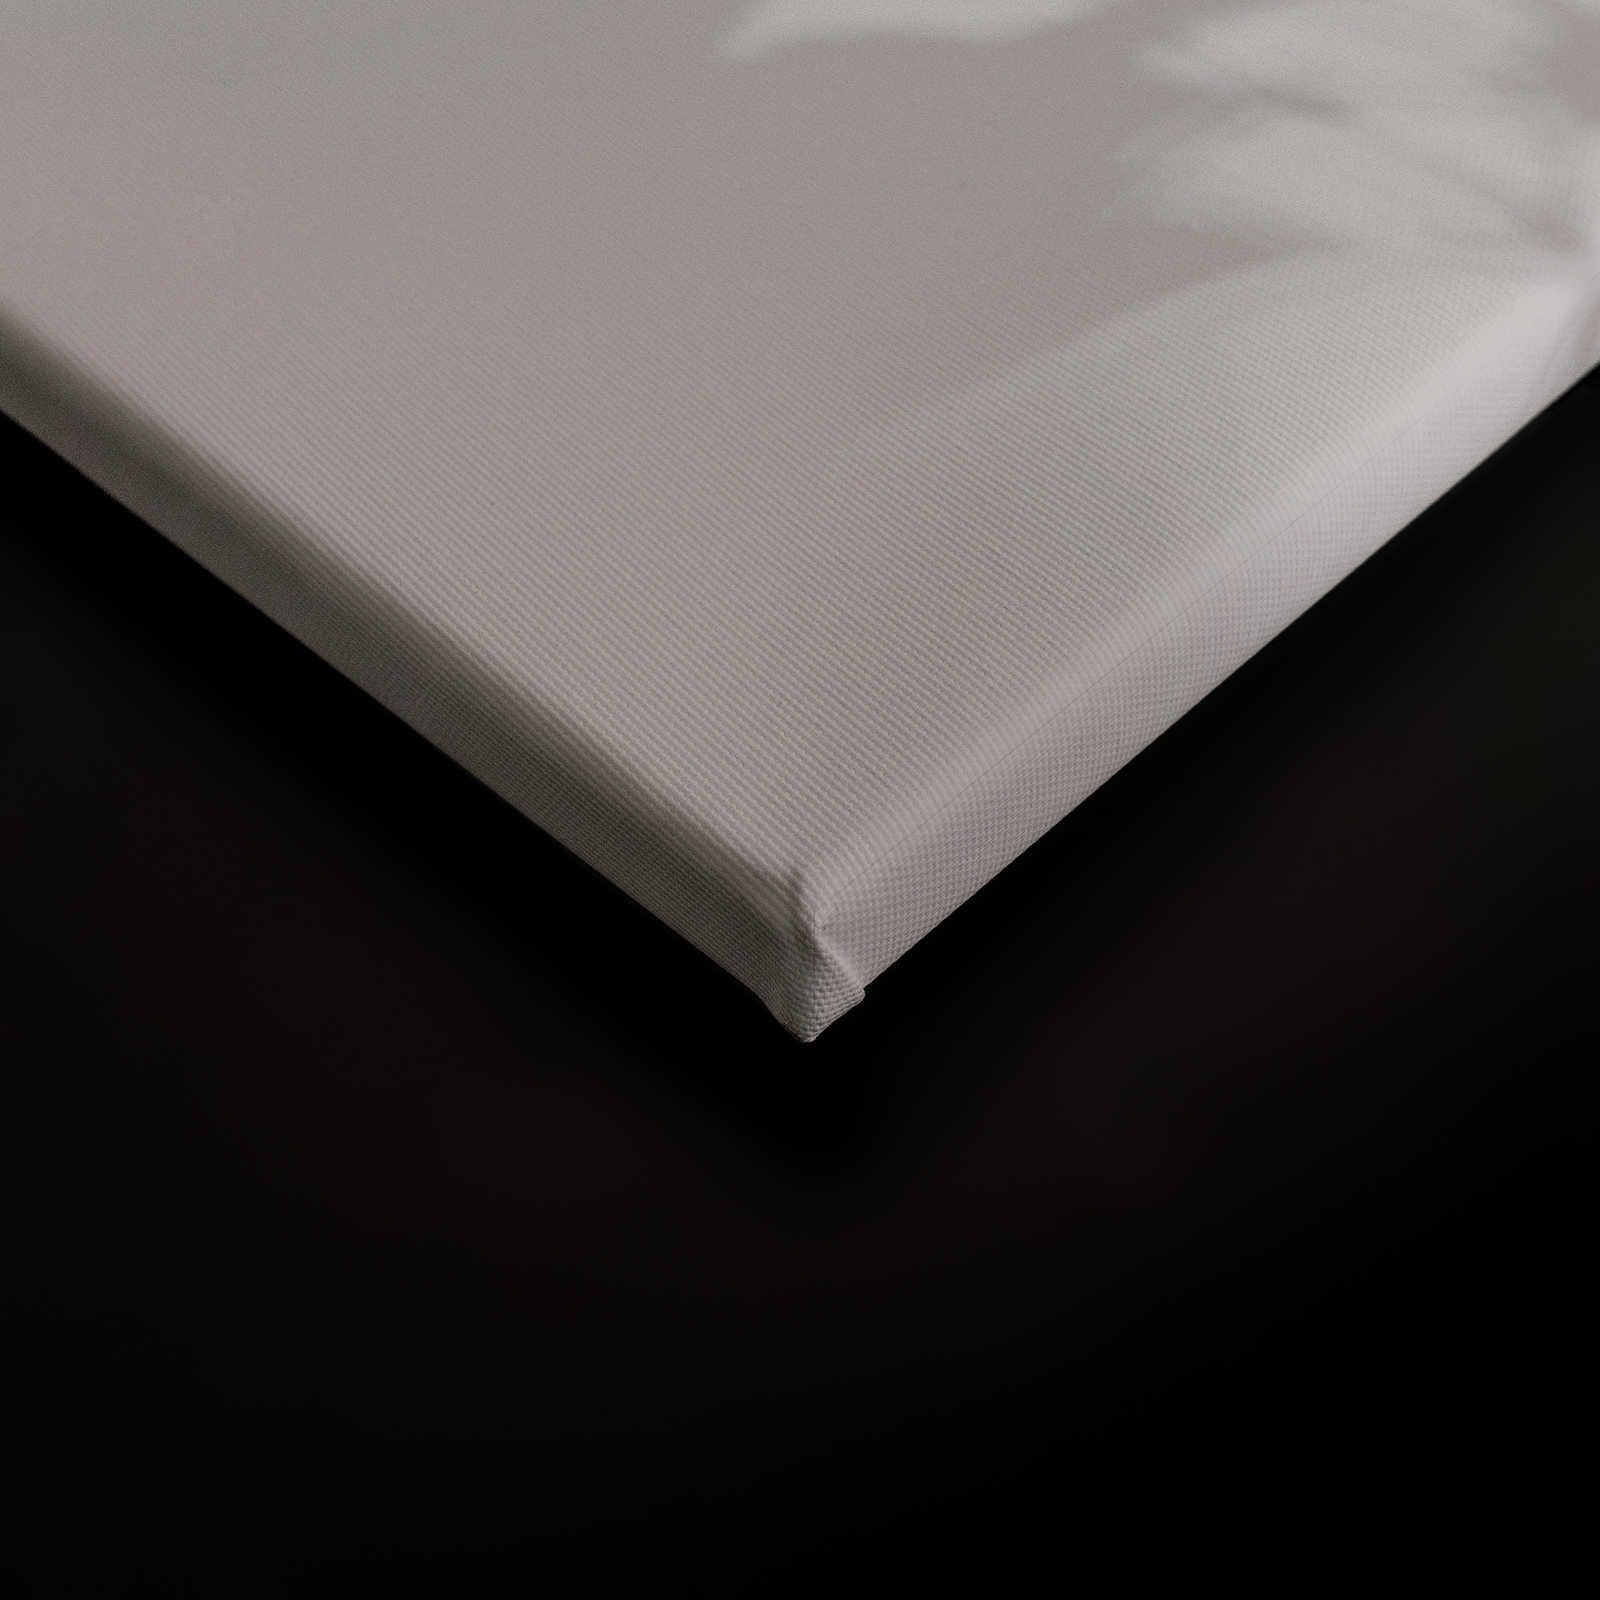             Shadow Room 2 - Lienzo Naturaleza Gris y Blanco, Diseño Desvanecido - 0.90 m x 0.60 m
        